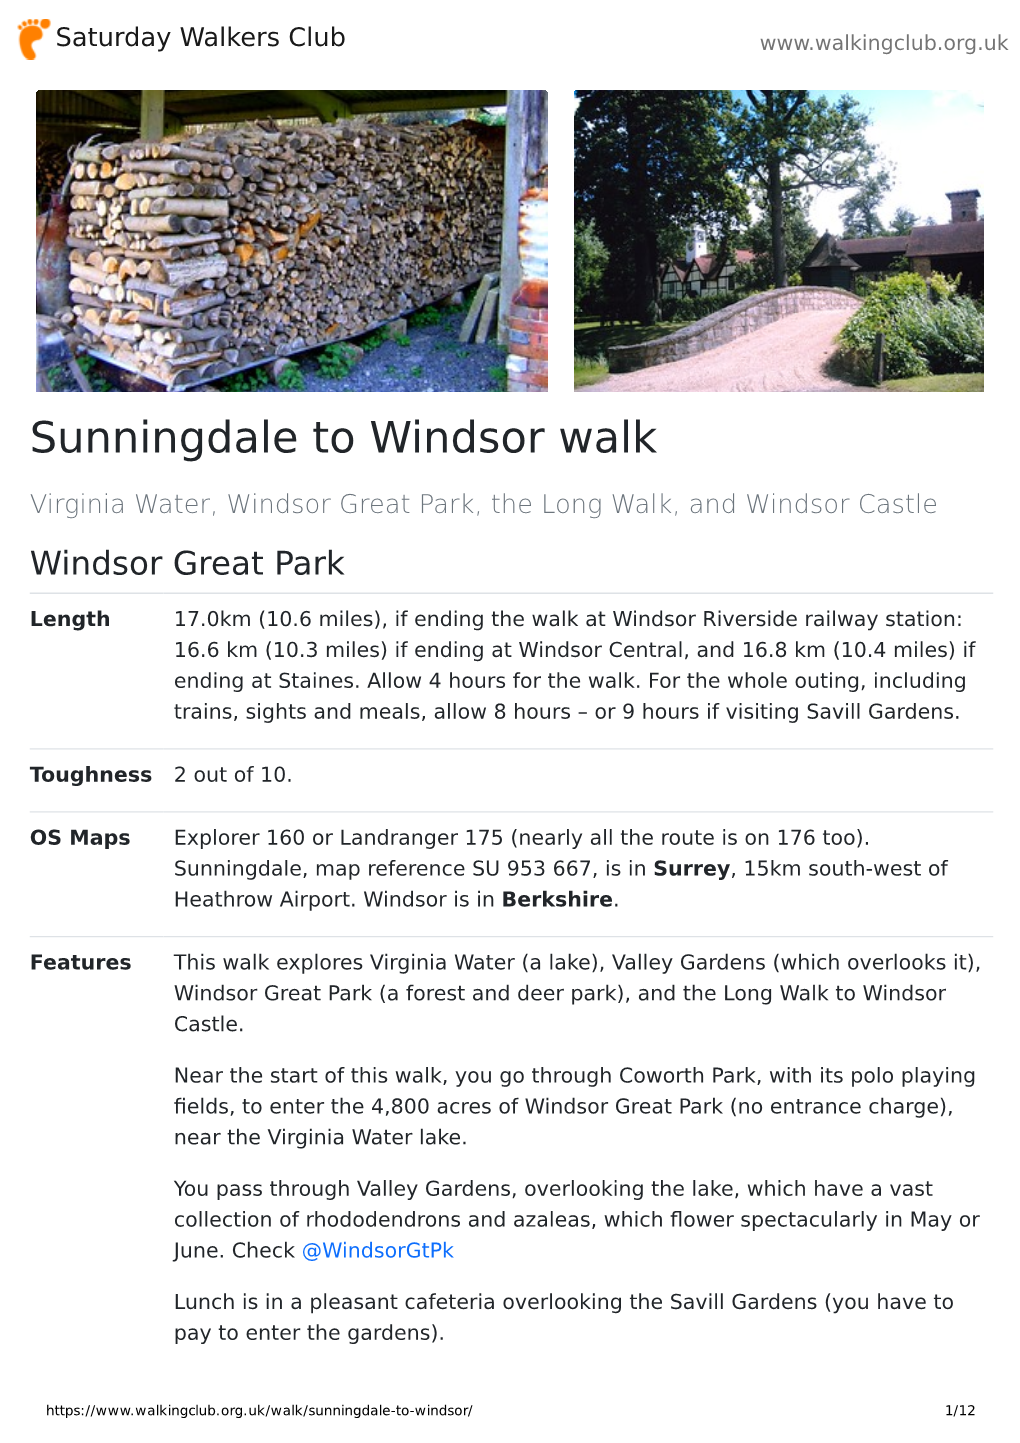 Sunningdale to Windsor Walk